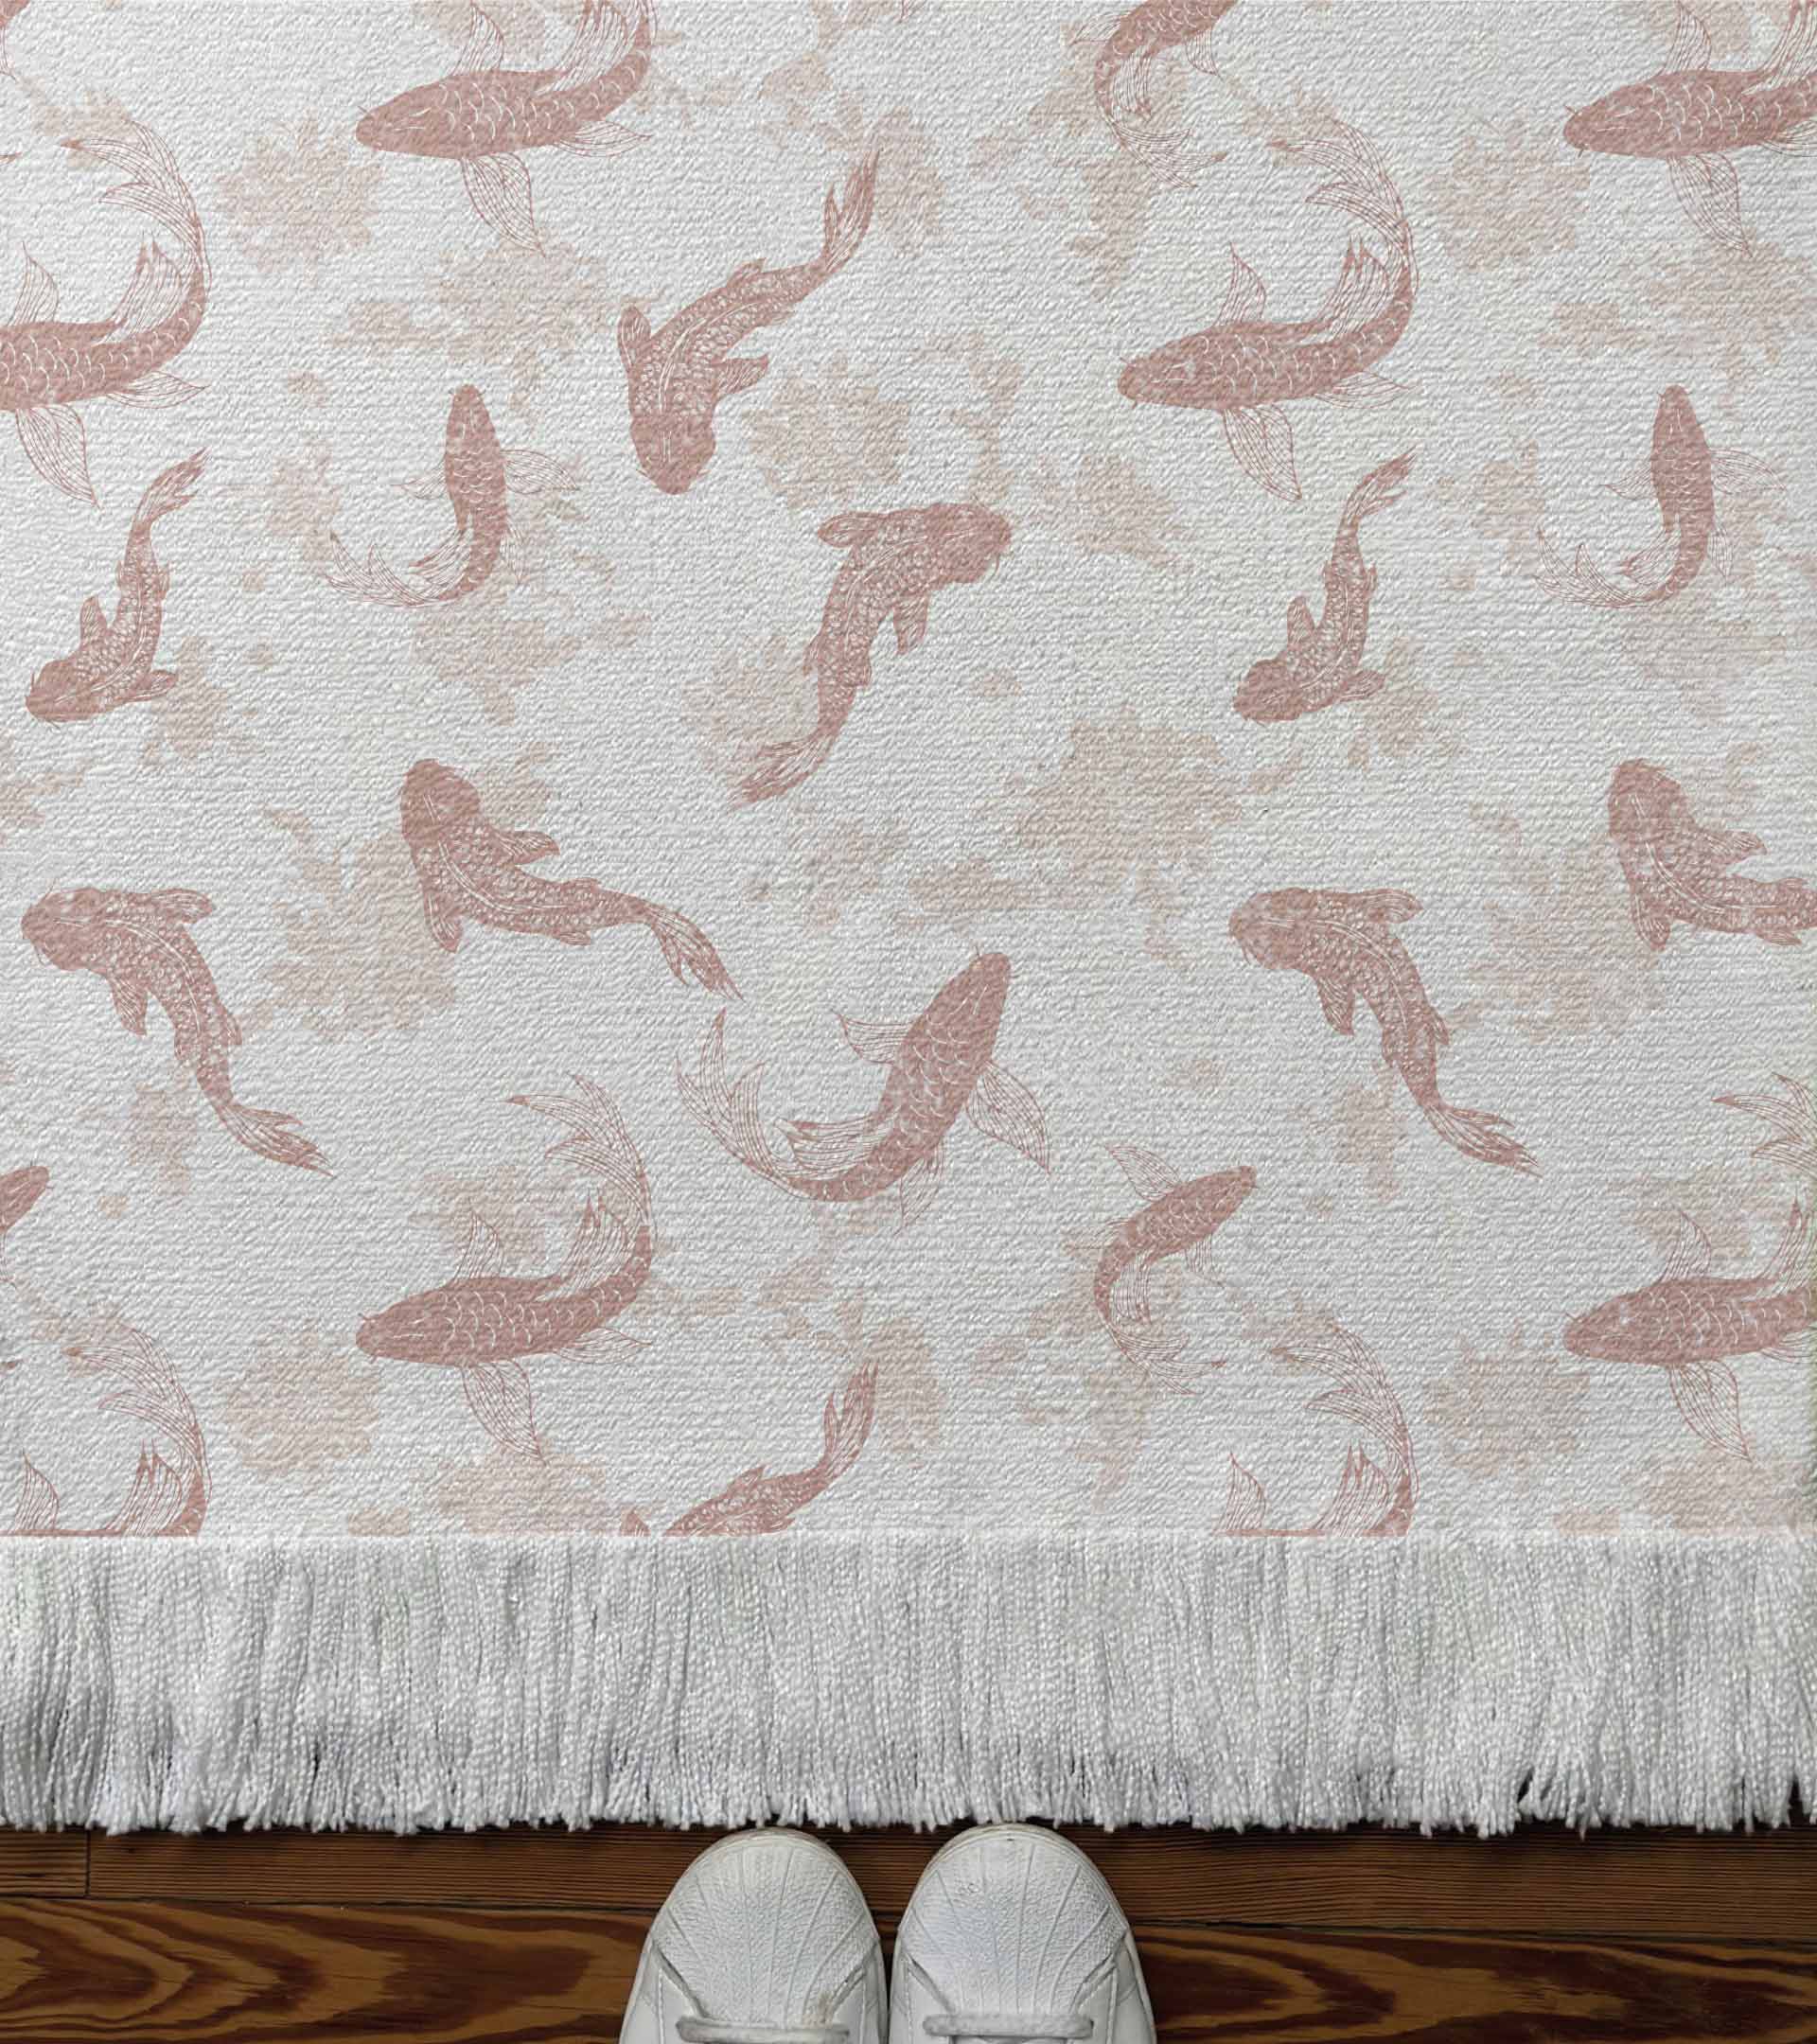 Alfombra tejida diseño con animales, peces, carpas, de color rosa